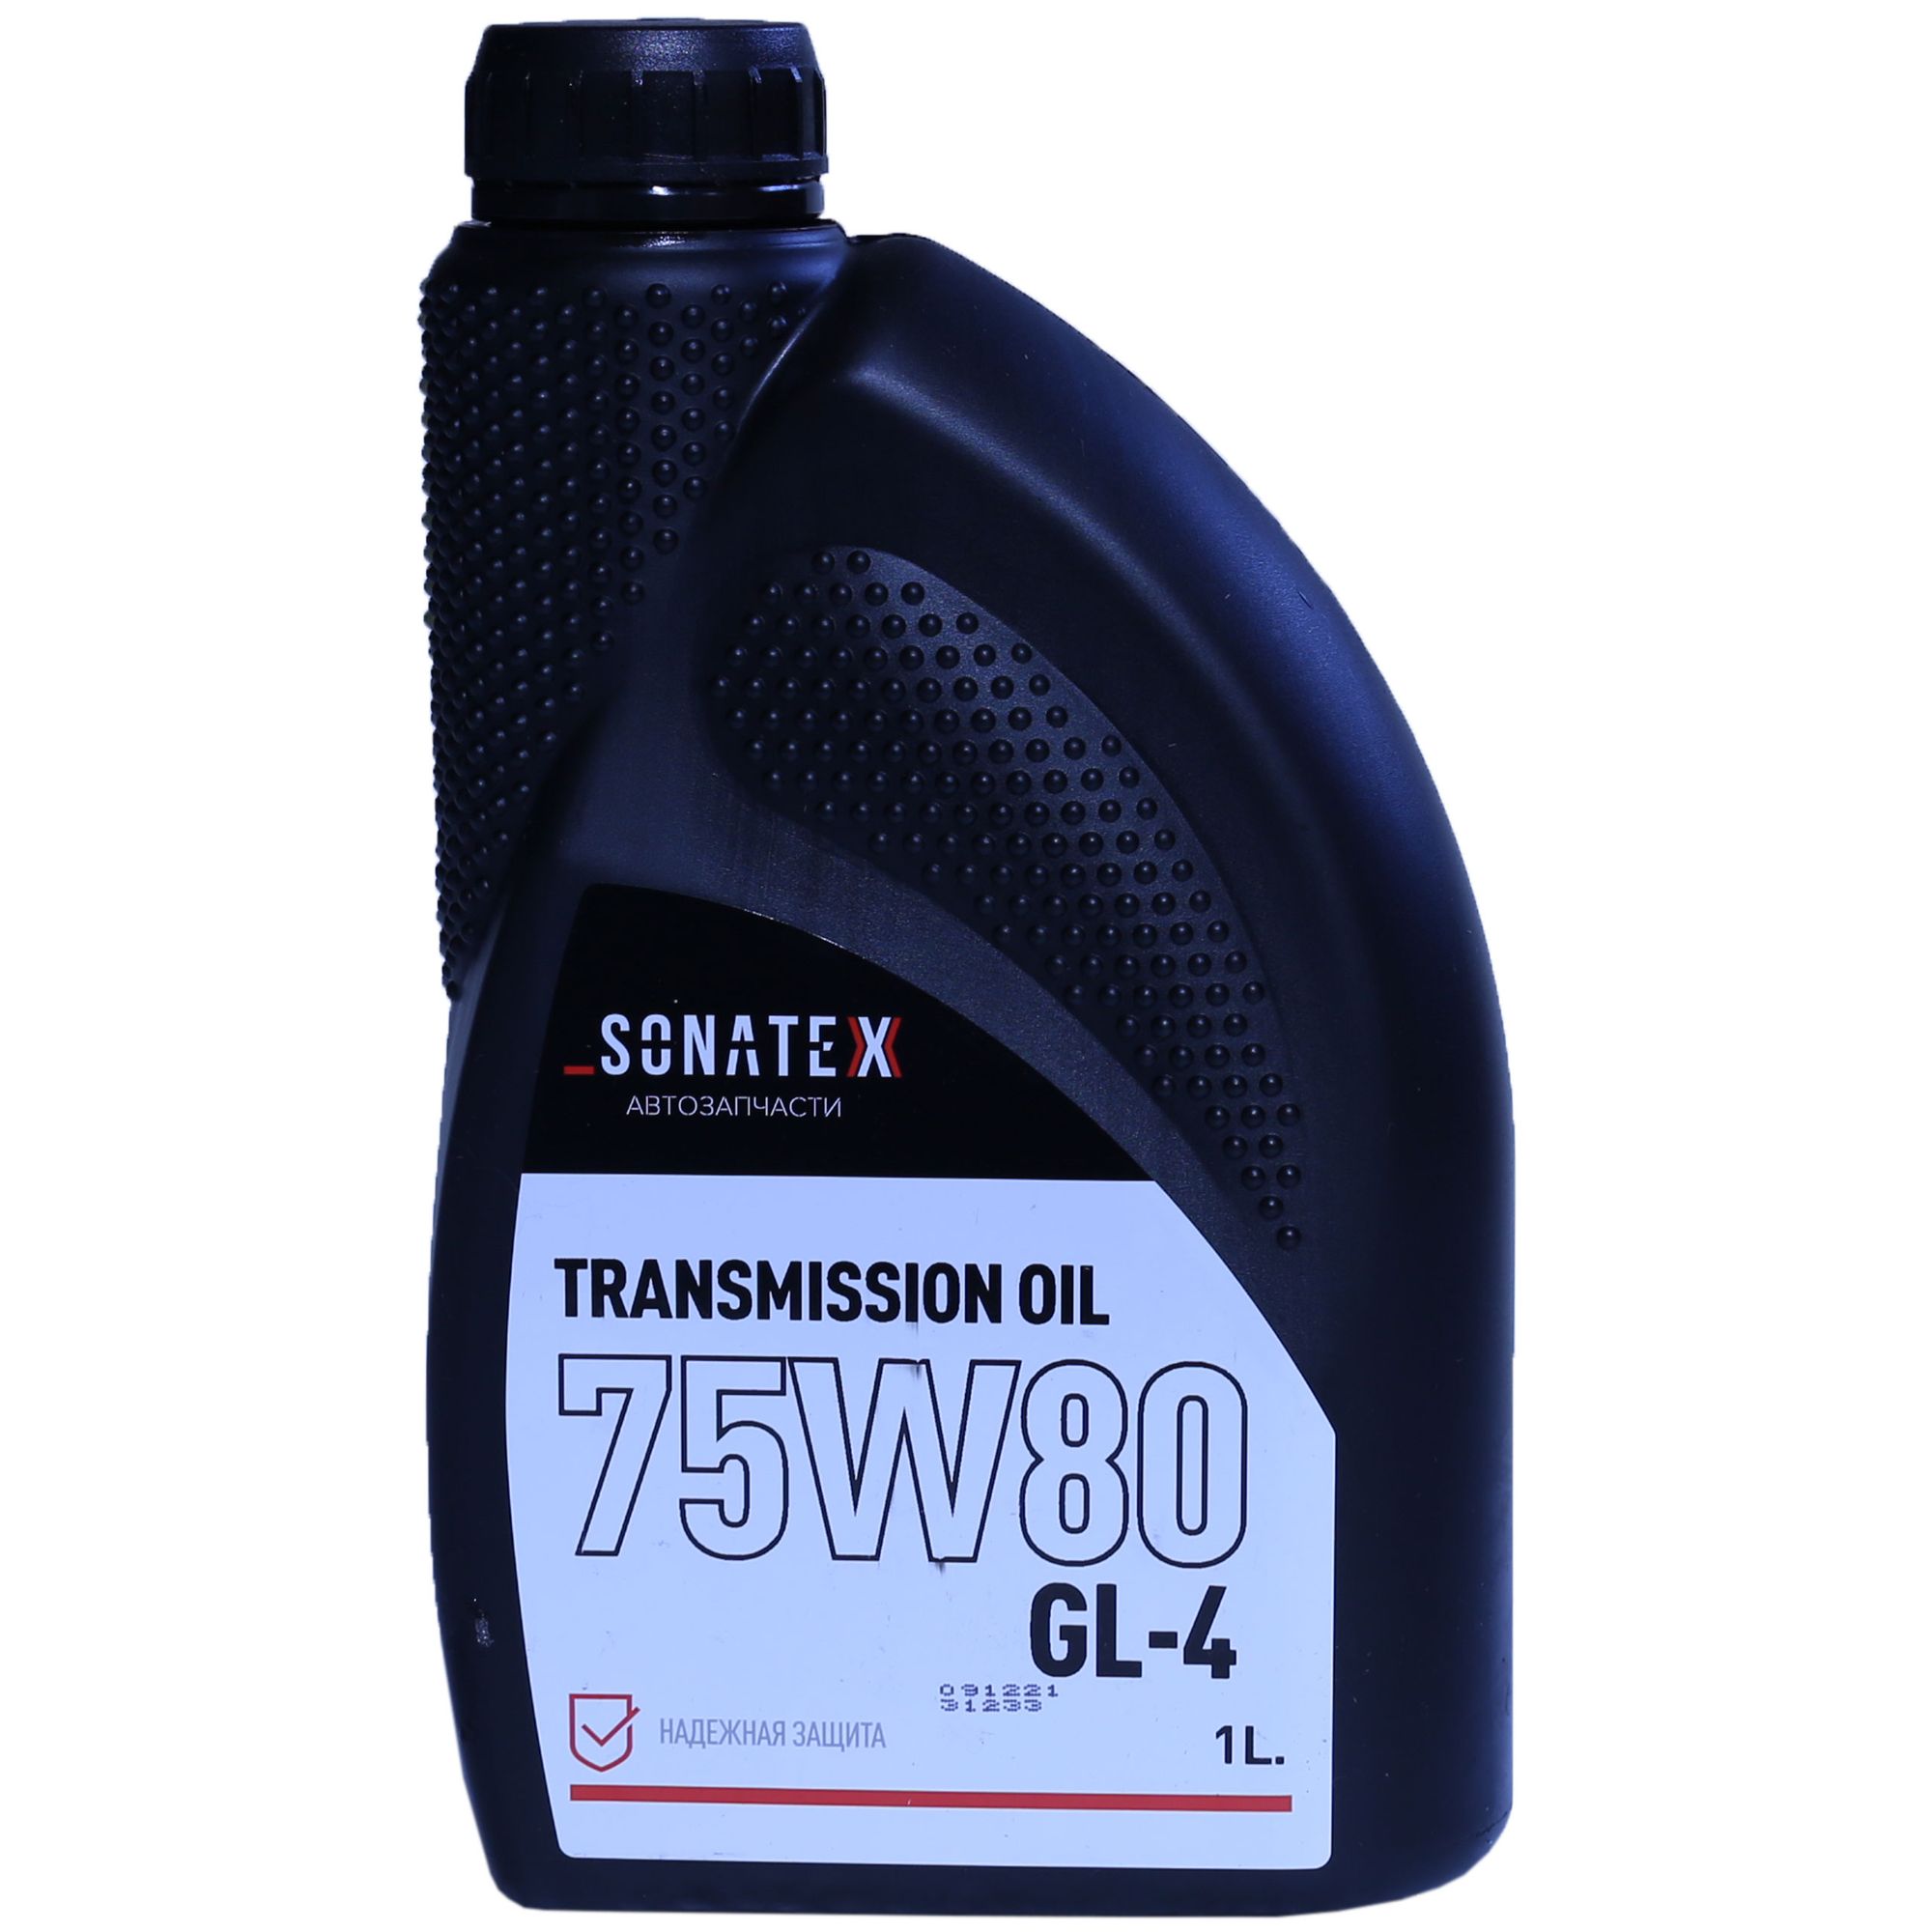  Трансмиссионное масло ELF Tranself NFJ 75W-80, 1л 213875 Elf .